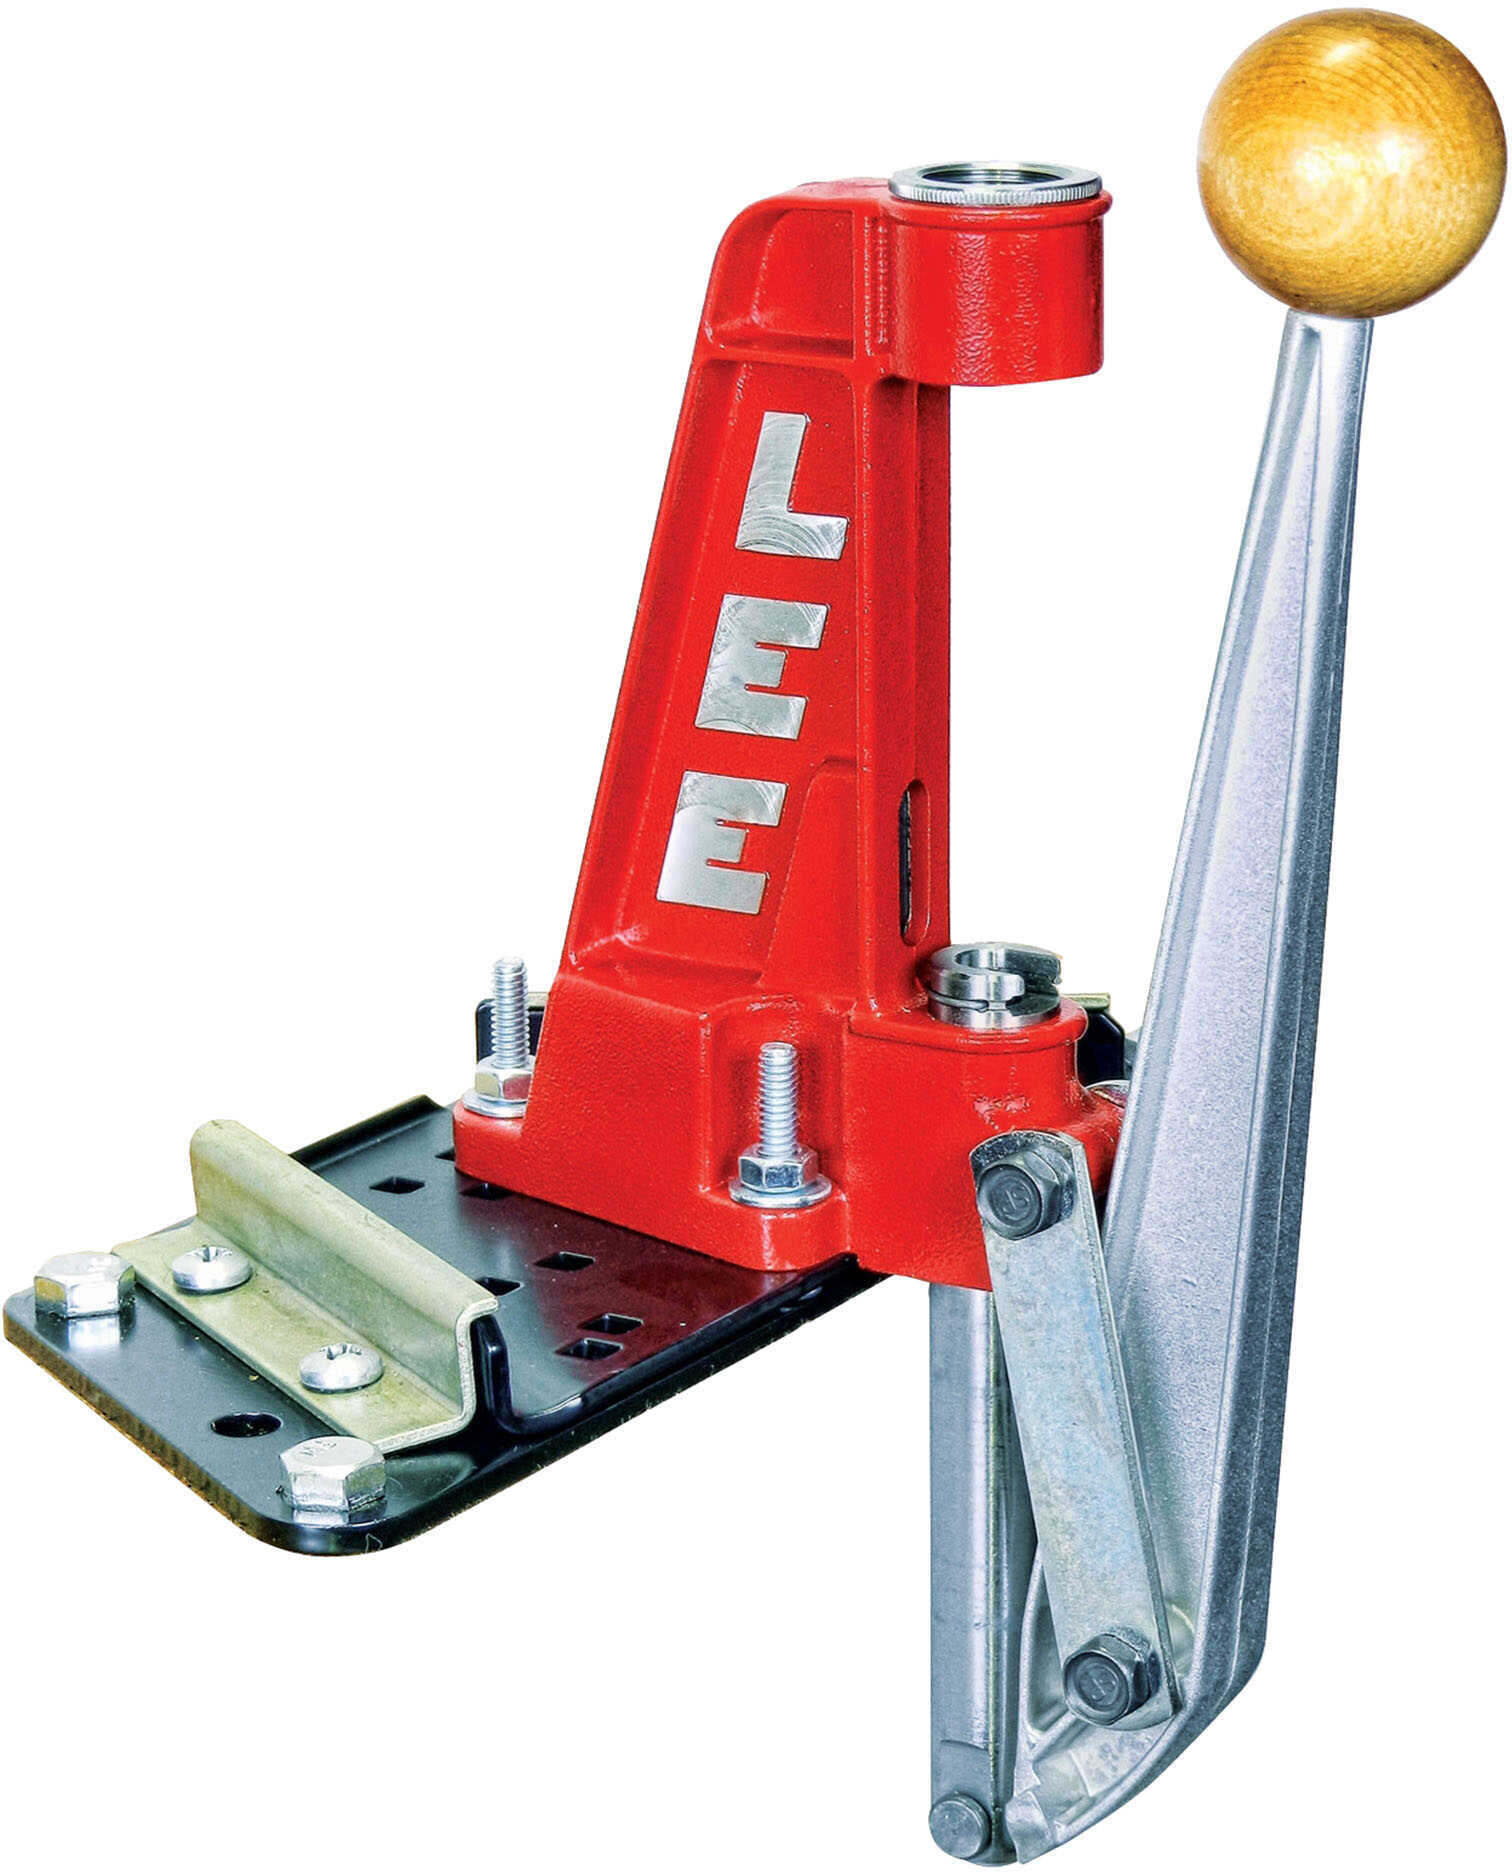 Lee Breech Lock Reloader Single Stage Press